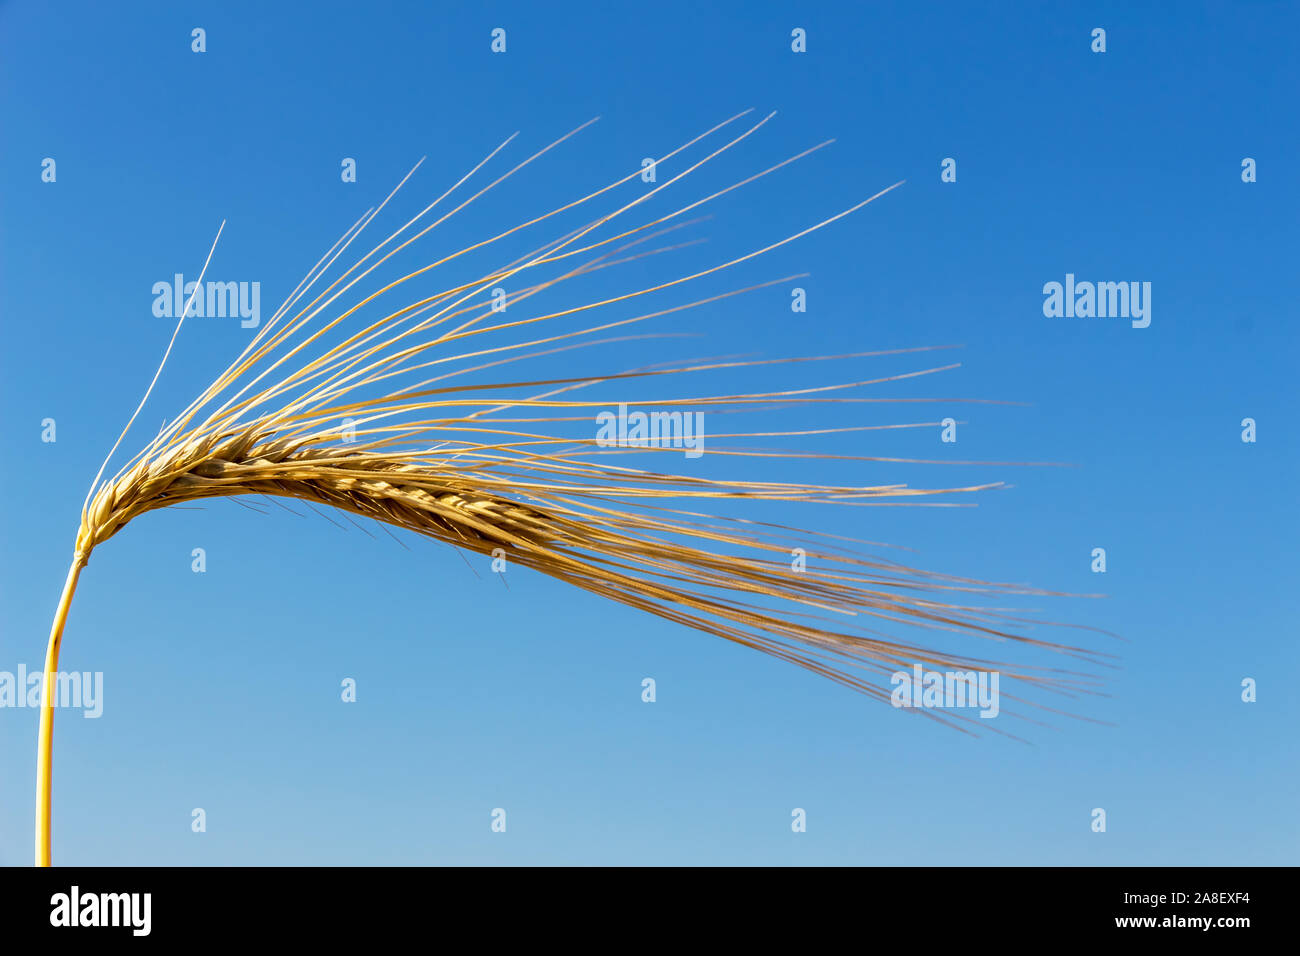 Ein Getreidefeld mit Gerste wartet auf die Ernte. Symbolfoto für Landwirtschaft und gesunde Ernährung, Einzelne Ähre, Nahaufnahme, Foto Stock